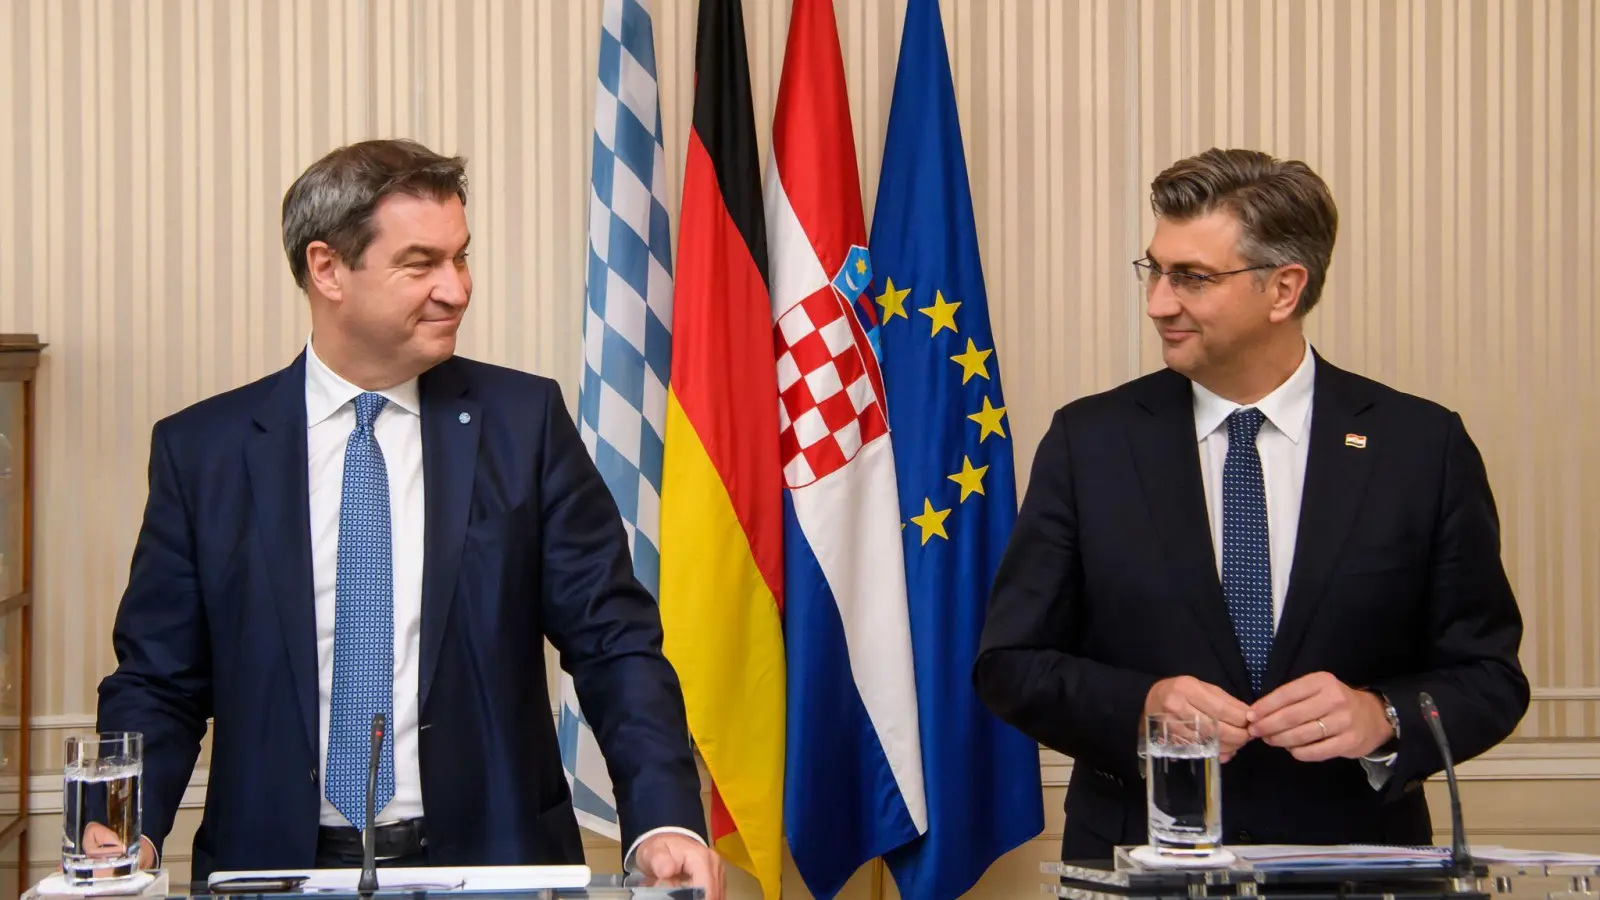 Bayerns Ministerpräsident Markus Söder (CSU, l) und Kroatiens Premierminister Andrej Plenkovic bei einer gemeinsamen Pressekonferenz. (Foto: Jörg Koch/CSU/dpa/Archivbild)